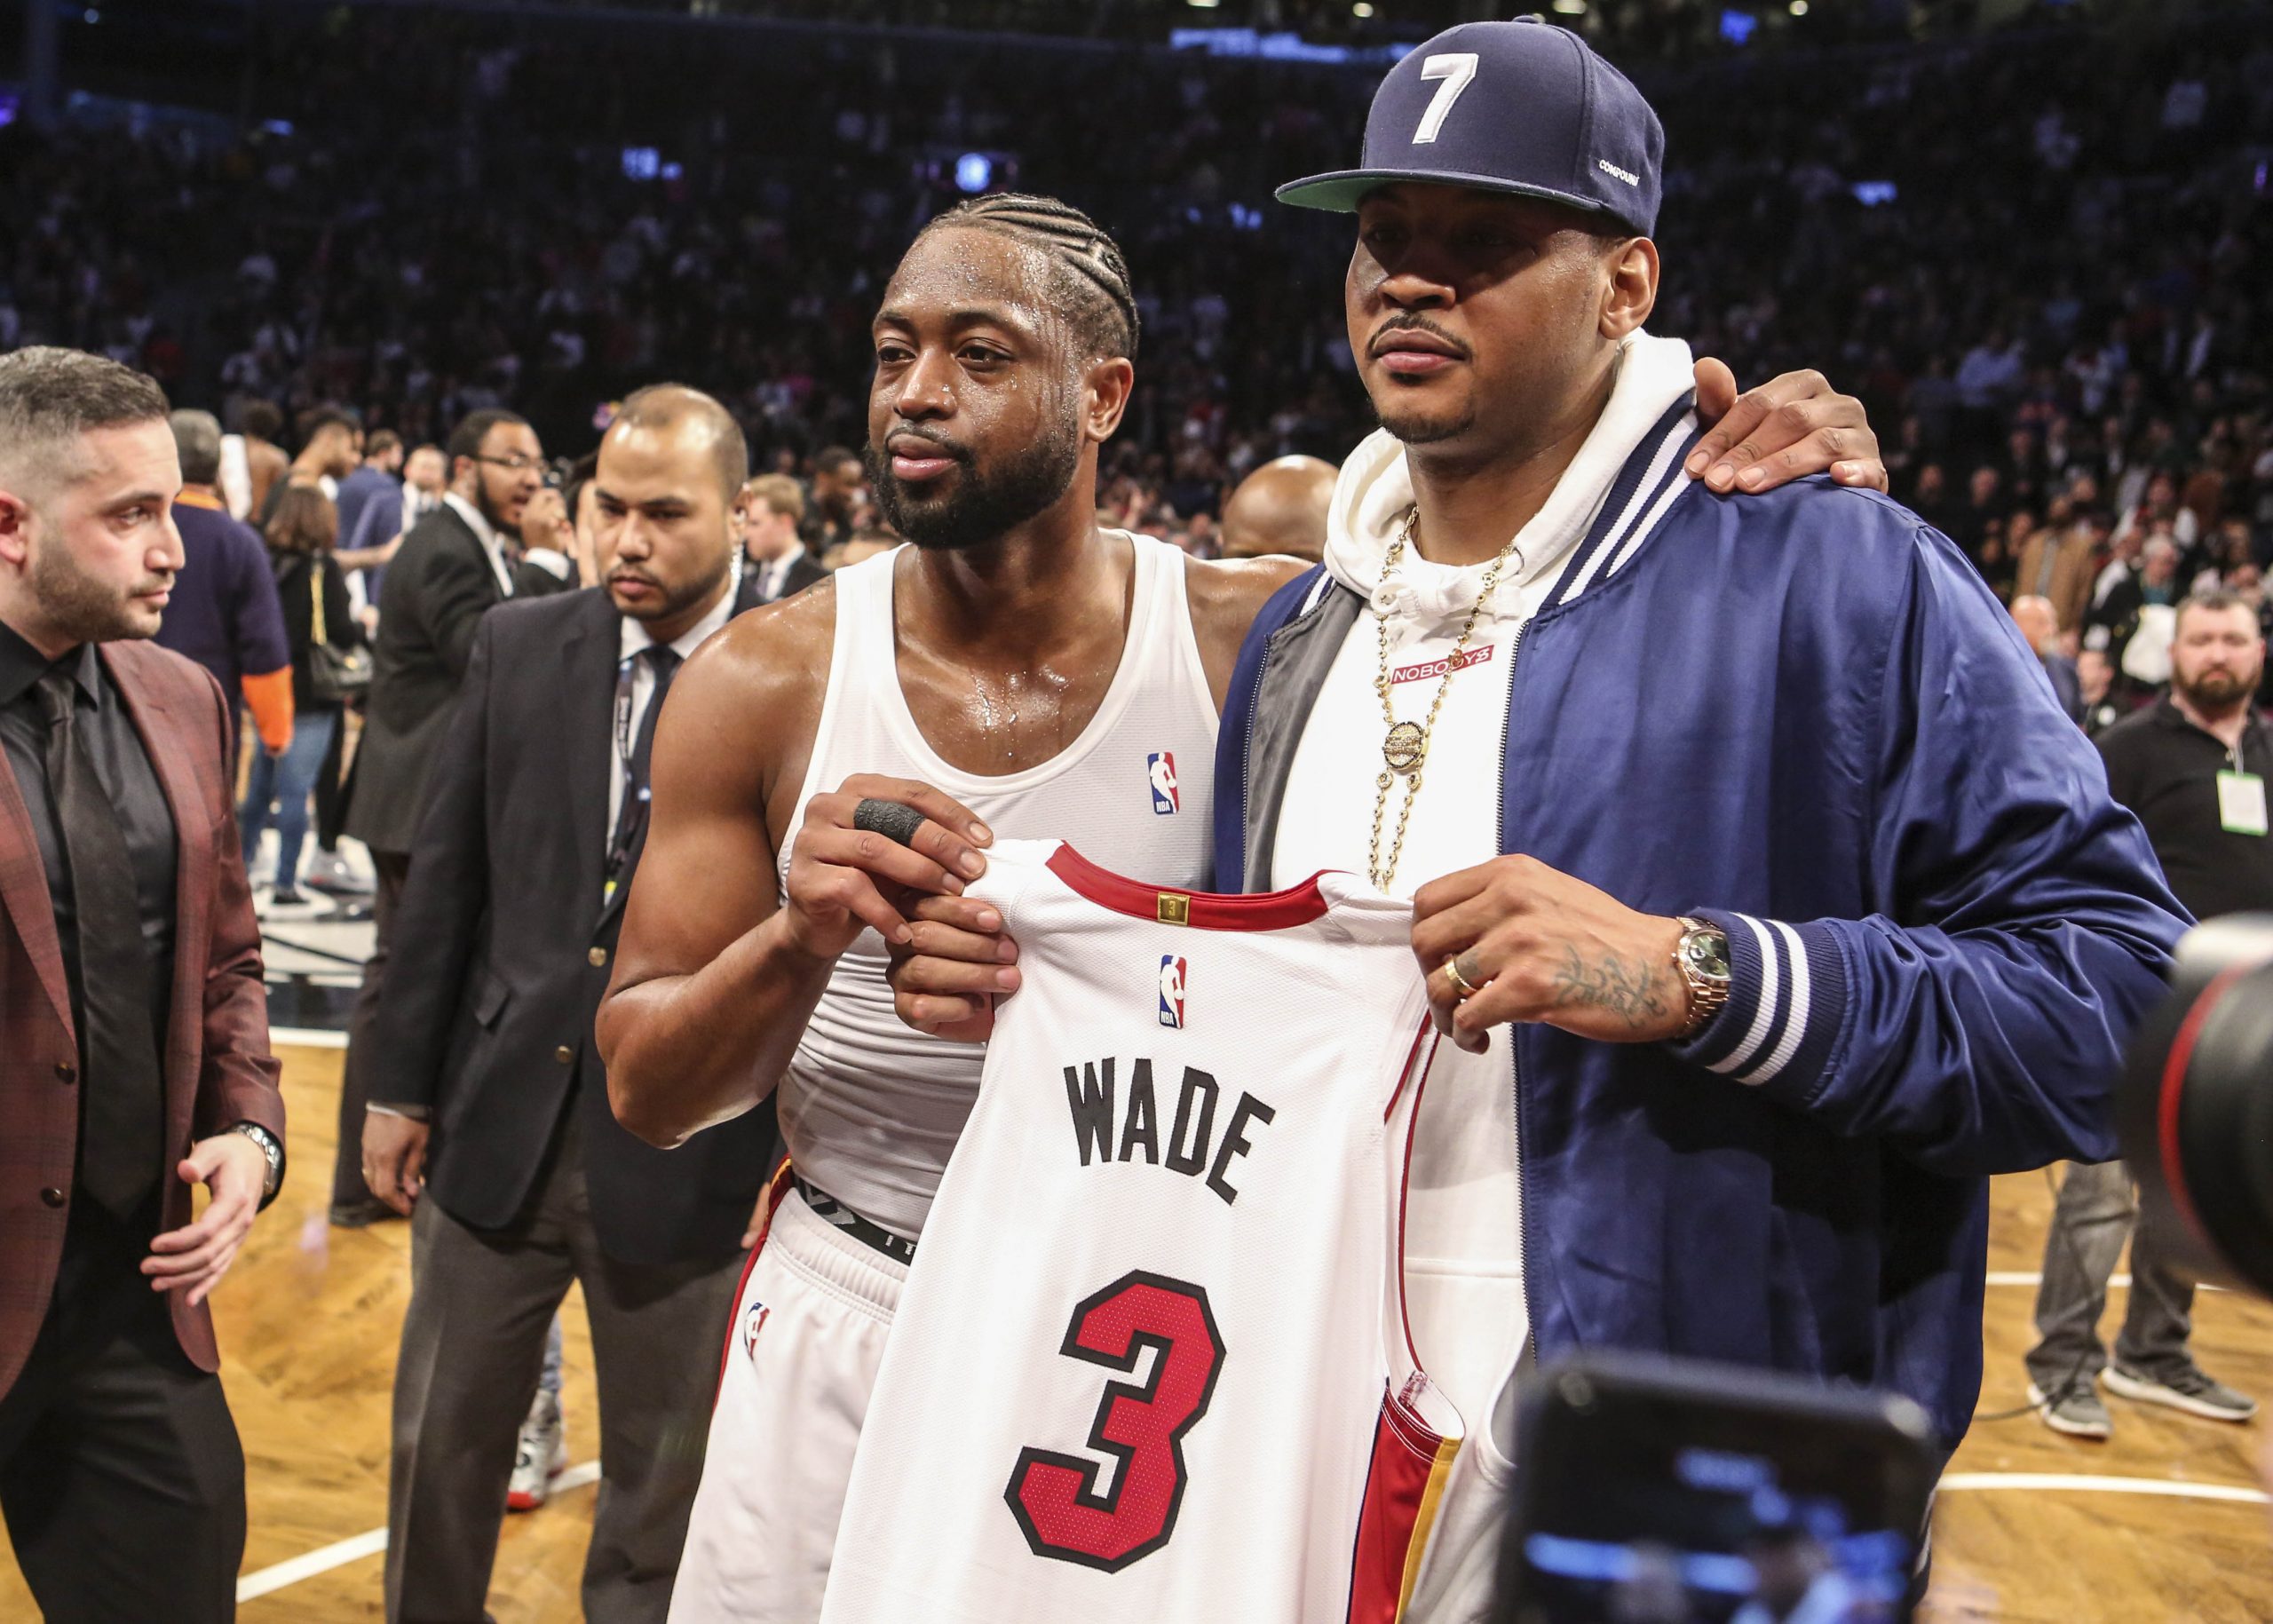 NBA: Miami Heat at Brooklyn Nets